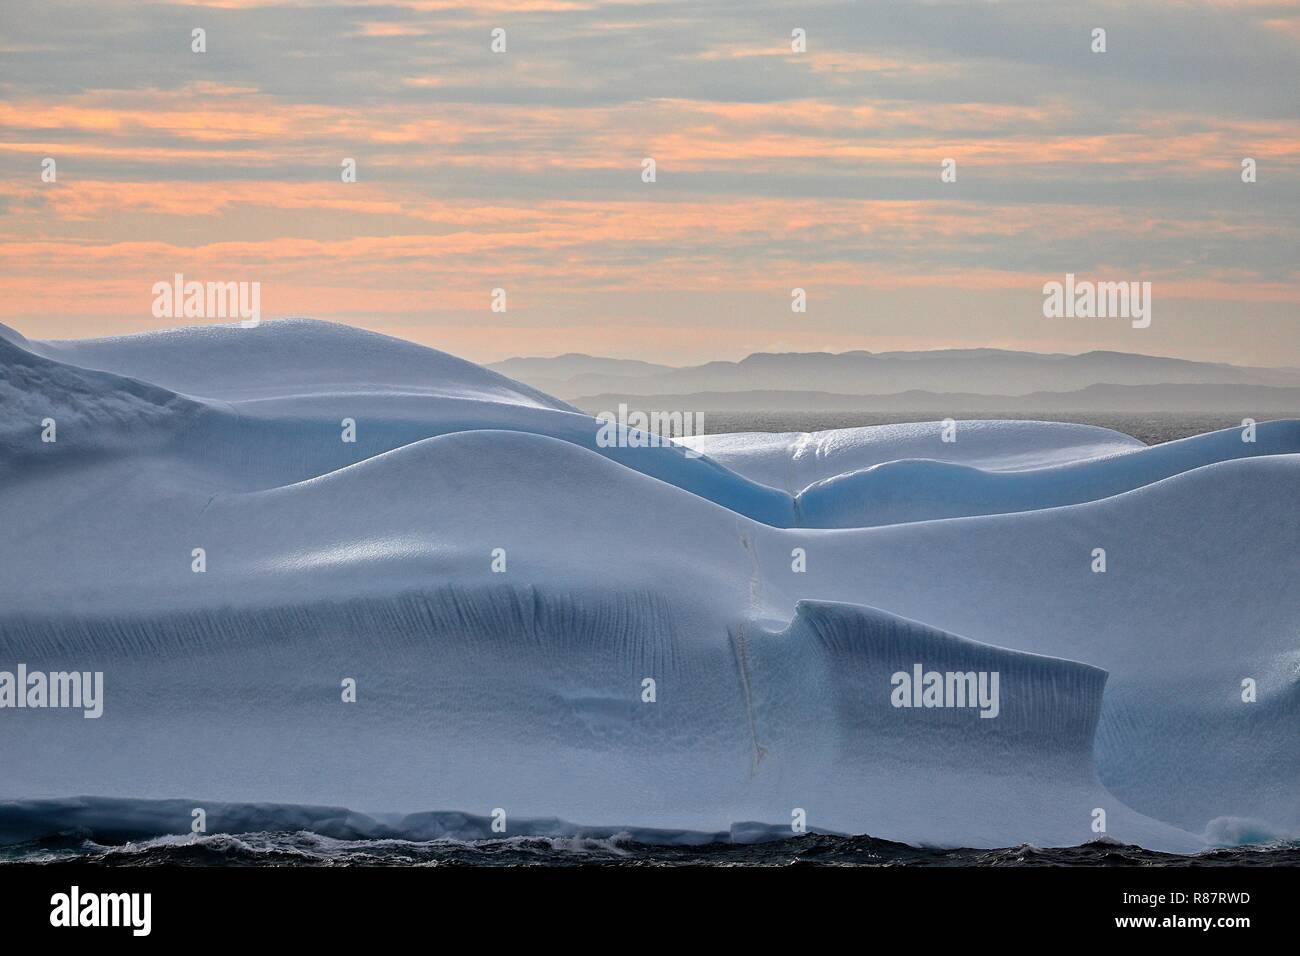 Grönland Disko Bucht: Ein Eisberg mit saft geschwungenen Formen, wie gemalt. Stock Photo